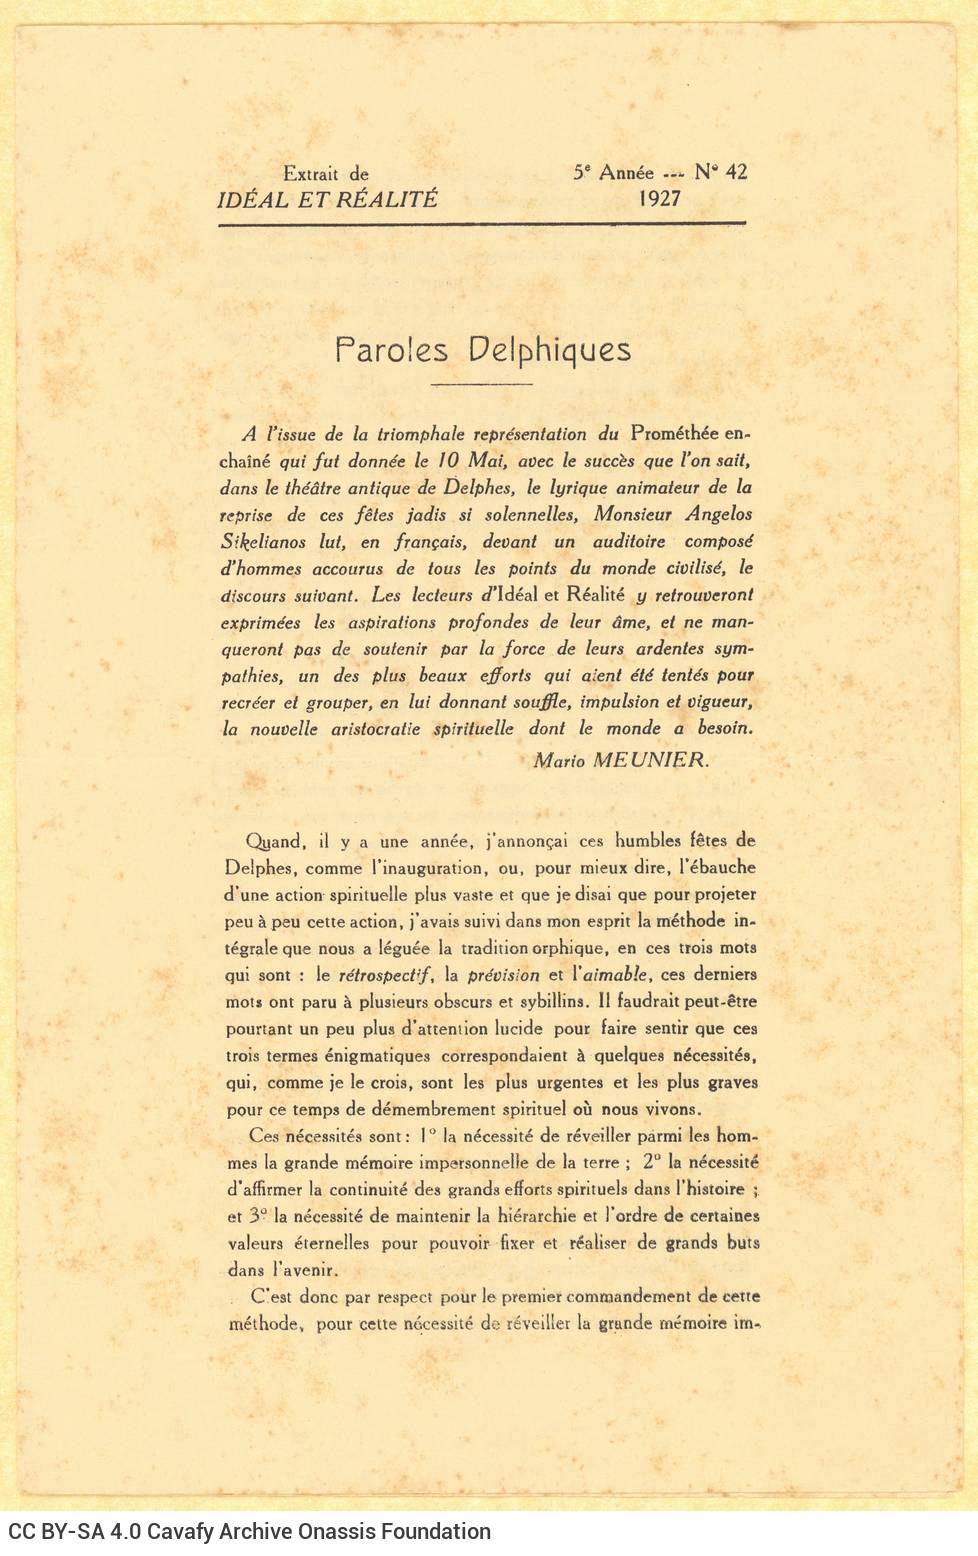 Τετρασέλιδο ανάτυπο από το τεύχος 42 του εντύπου *Idéal et Réalité*, με κείμ�